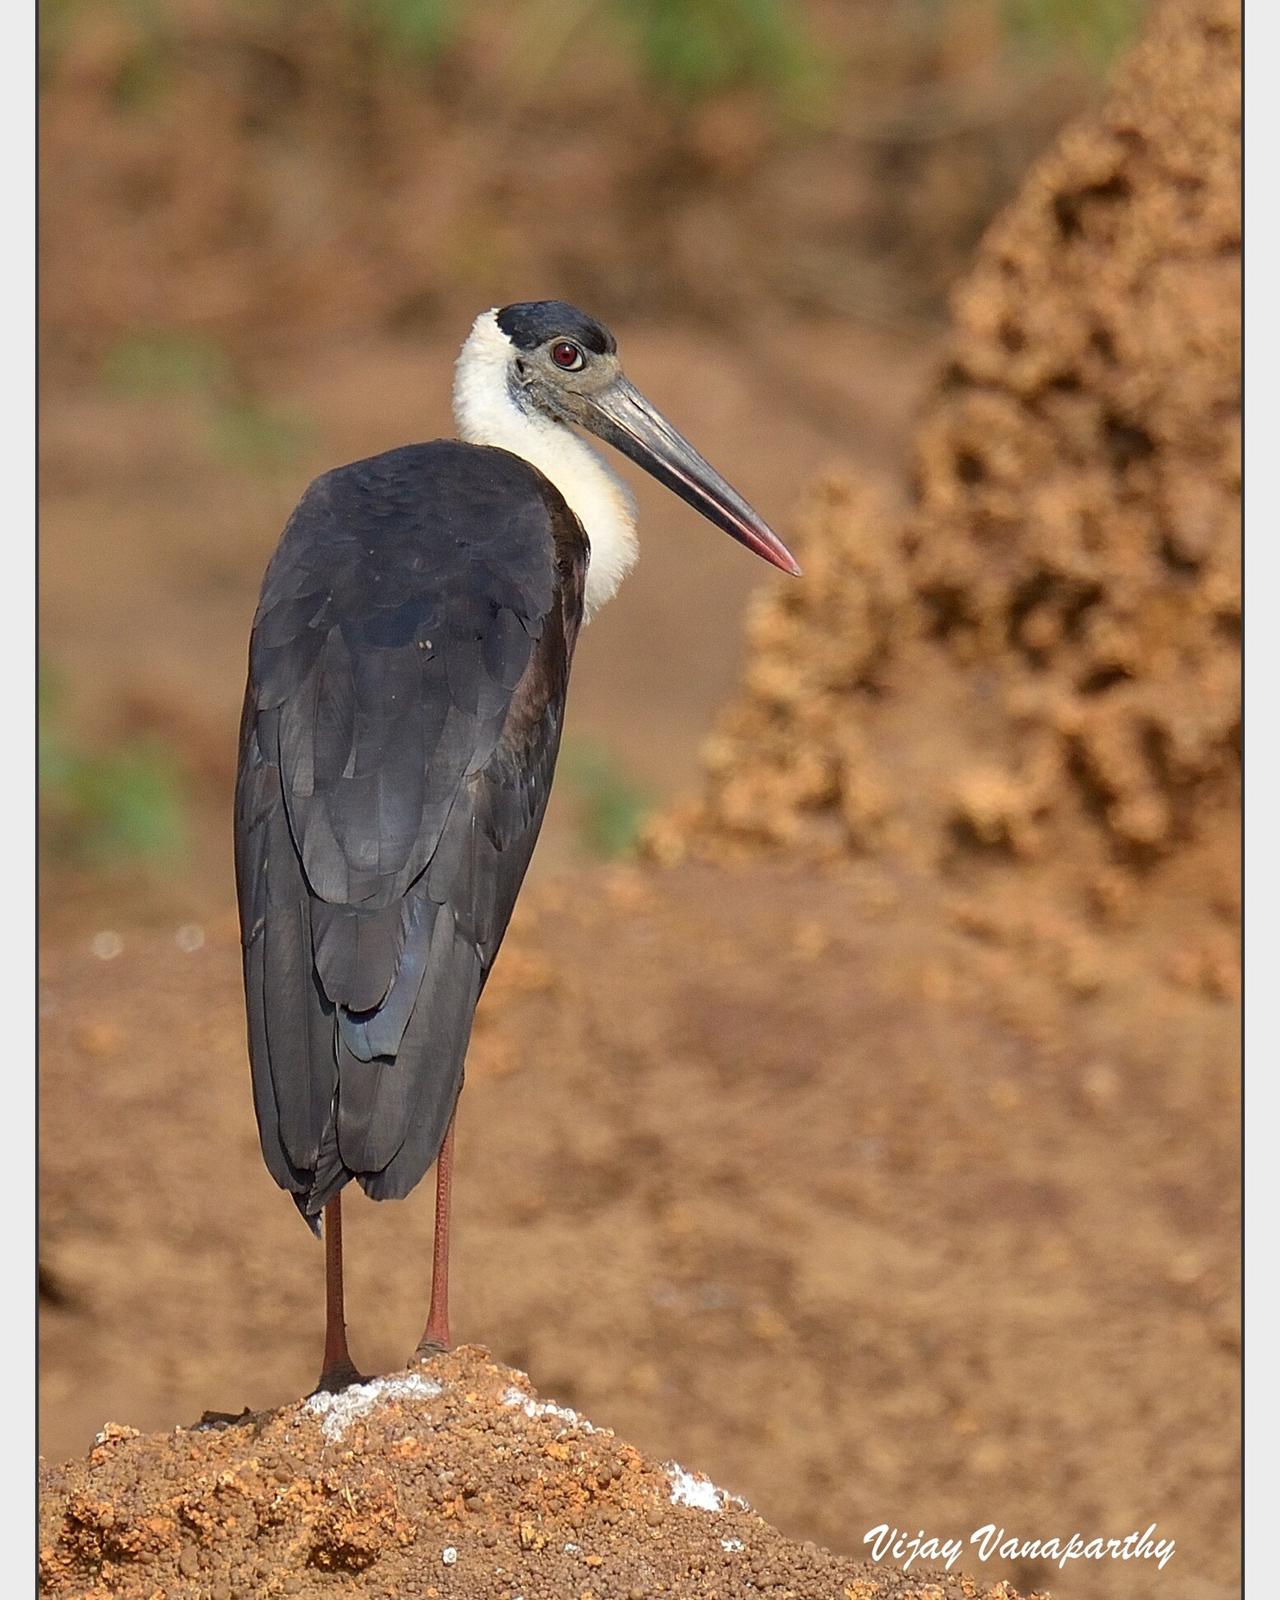 Woolly-necked Stork Photo by Vijay Vanaparthy